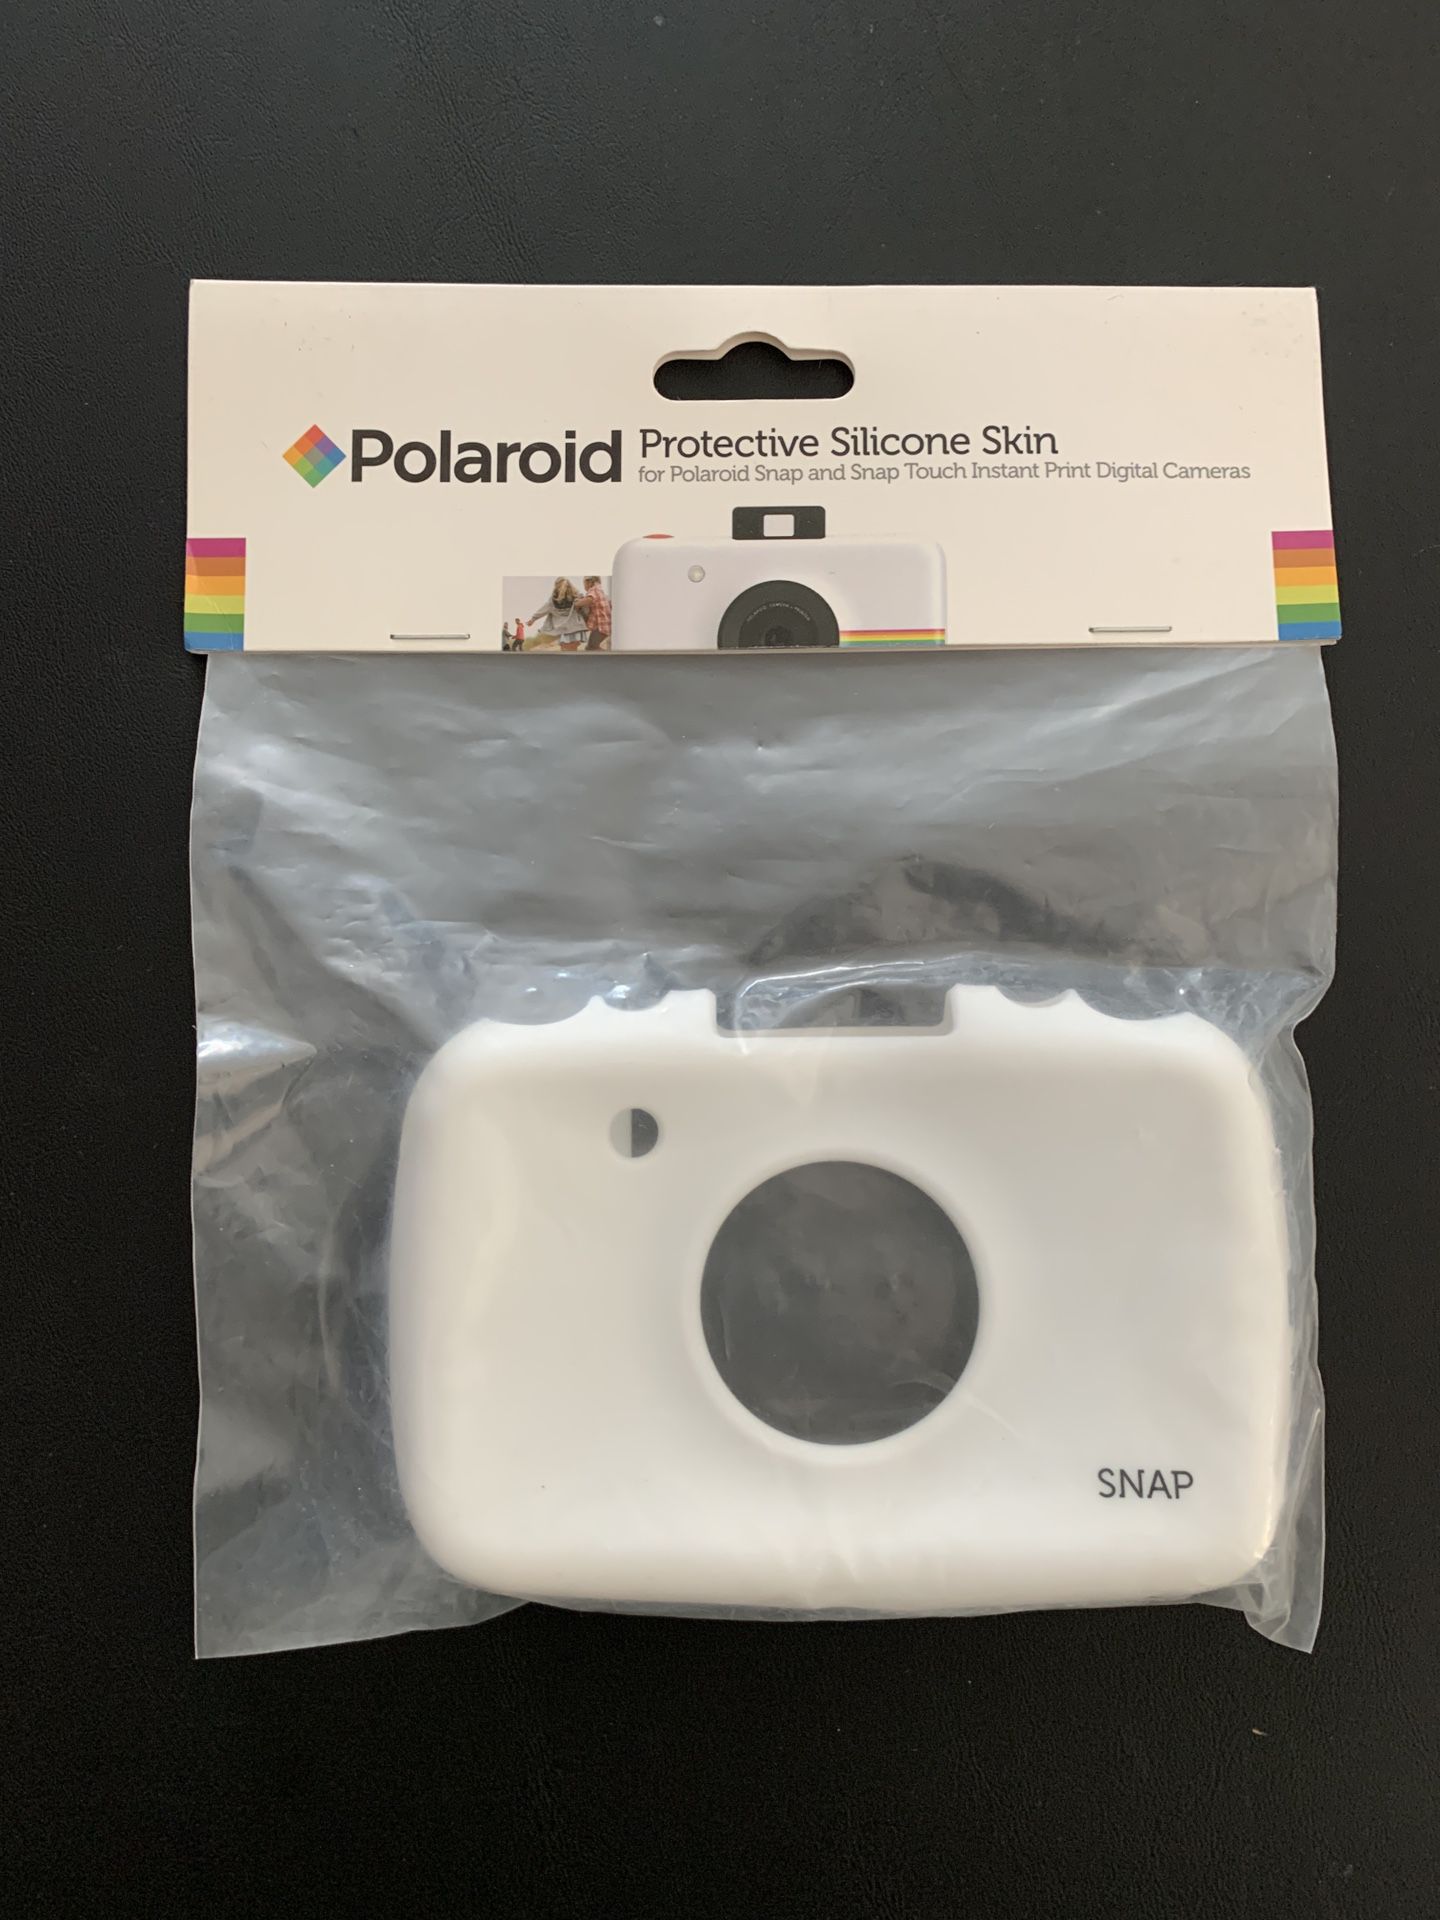 Polaroid Protective Silicone Skin for Polaroid Snap Digital Camera - White